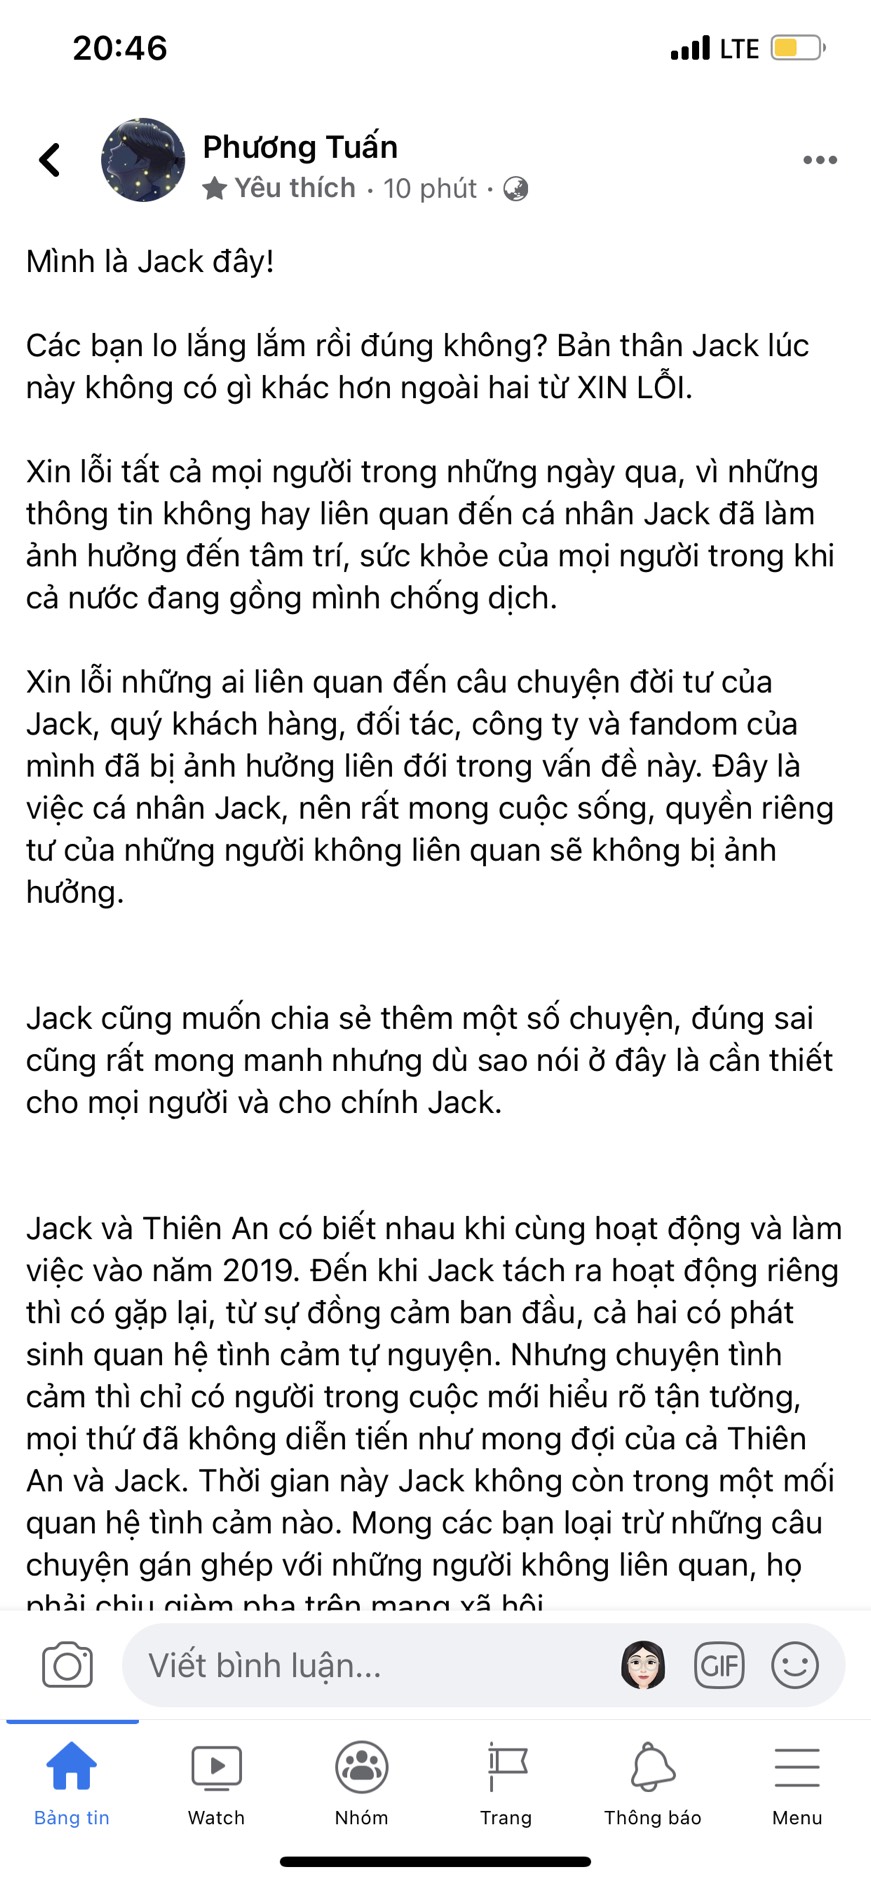 Jack lên tiếng xin lỗi, giải thích về lùm xùm lừa tình, có con riêng với Thiên An sau một thời gian 'im hơi nặng tiếng'.